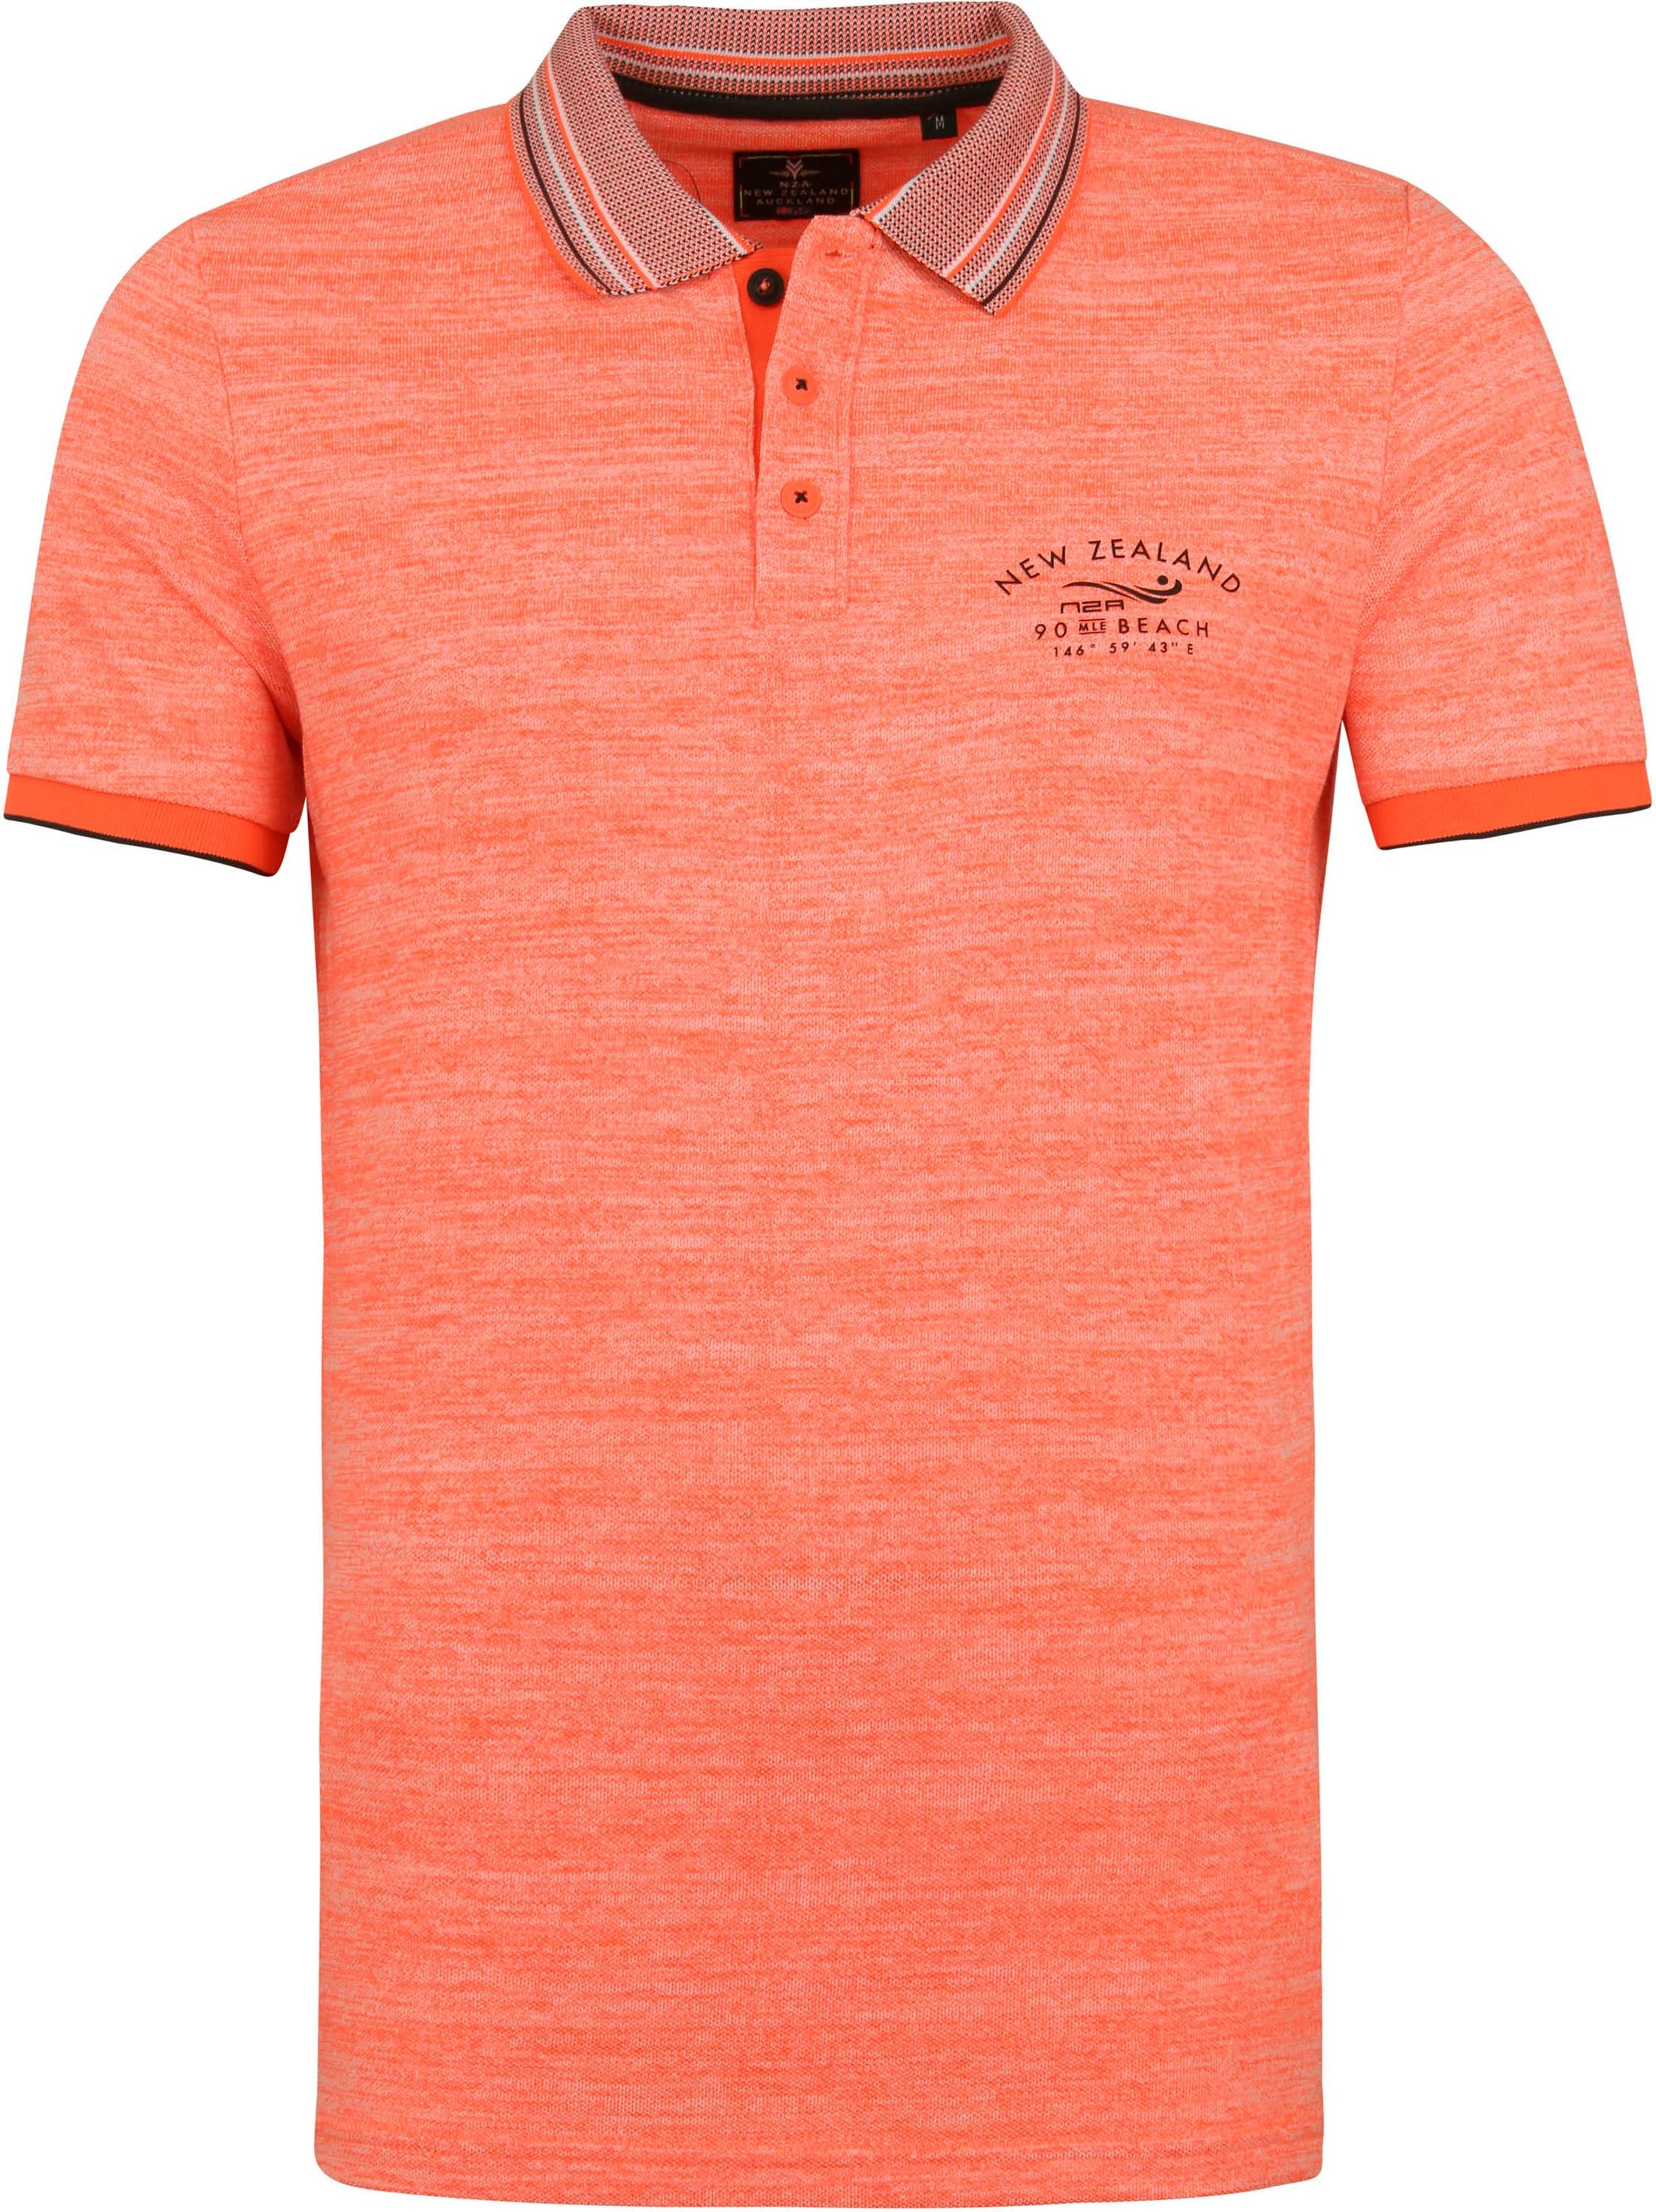 NZA Polo Shirt Dobson Peak Orange size L